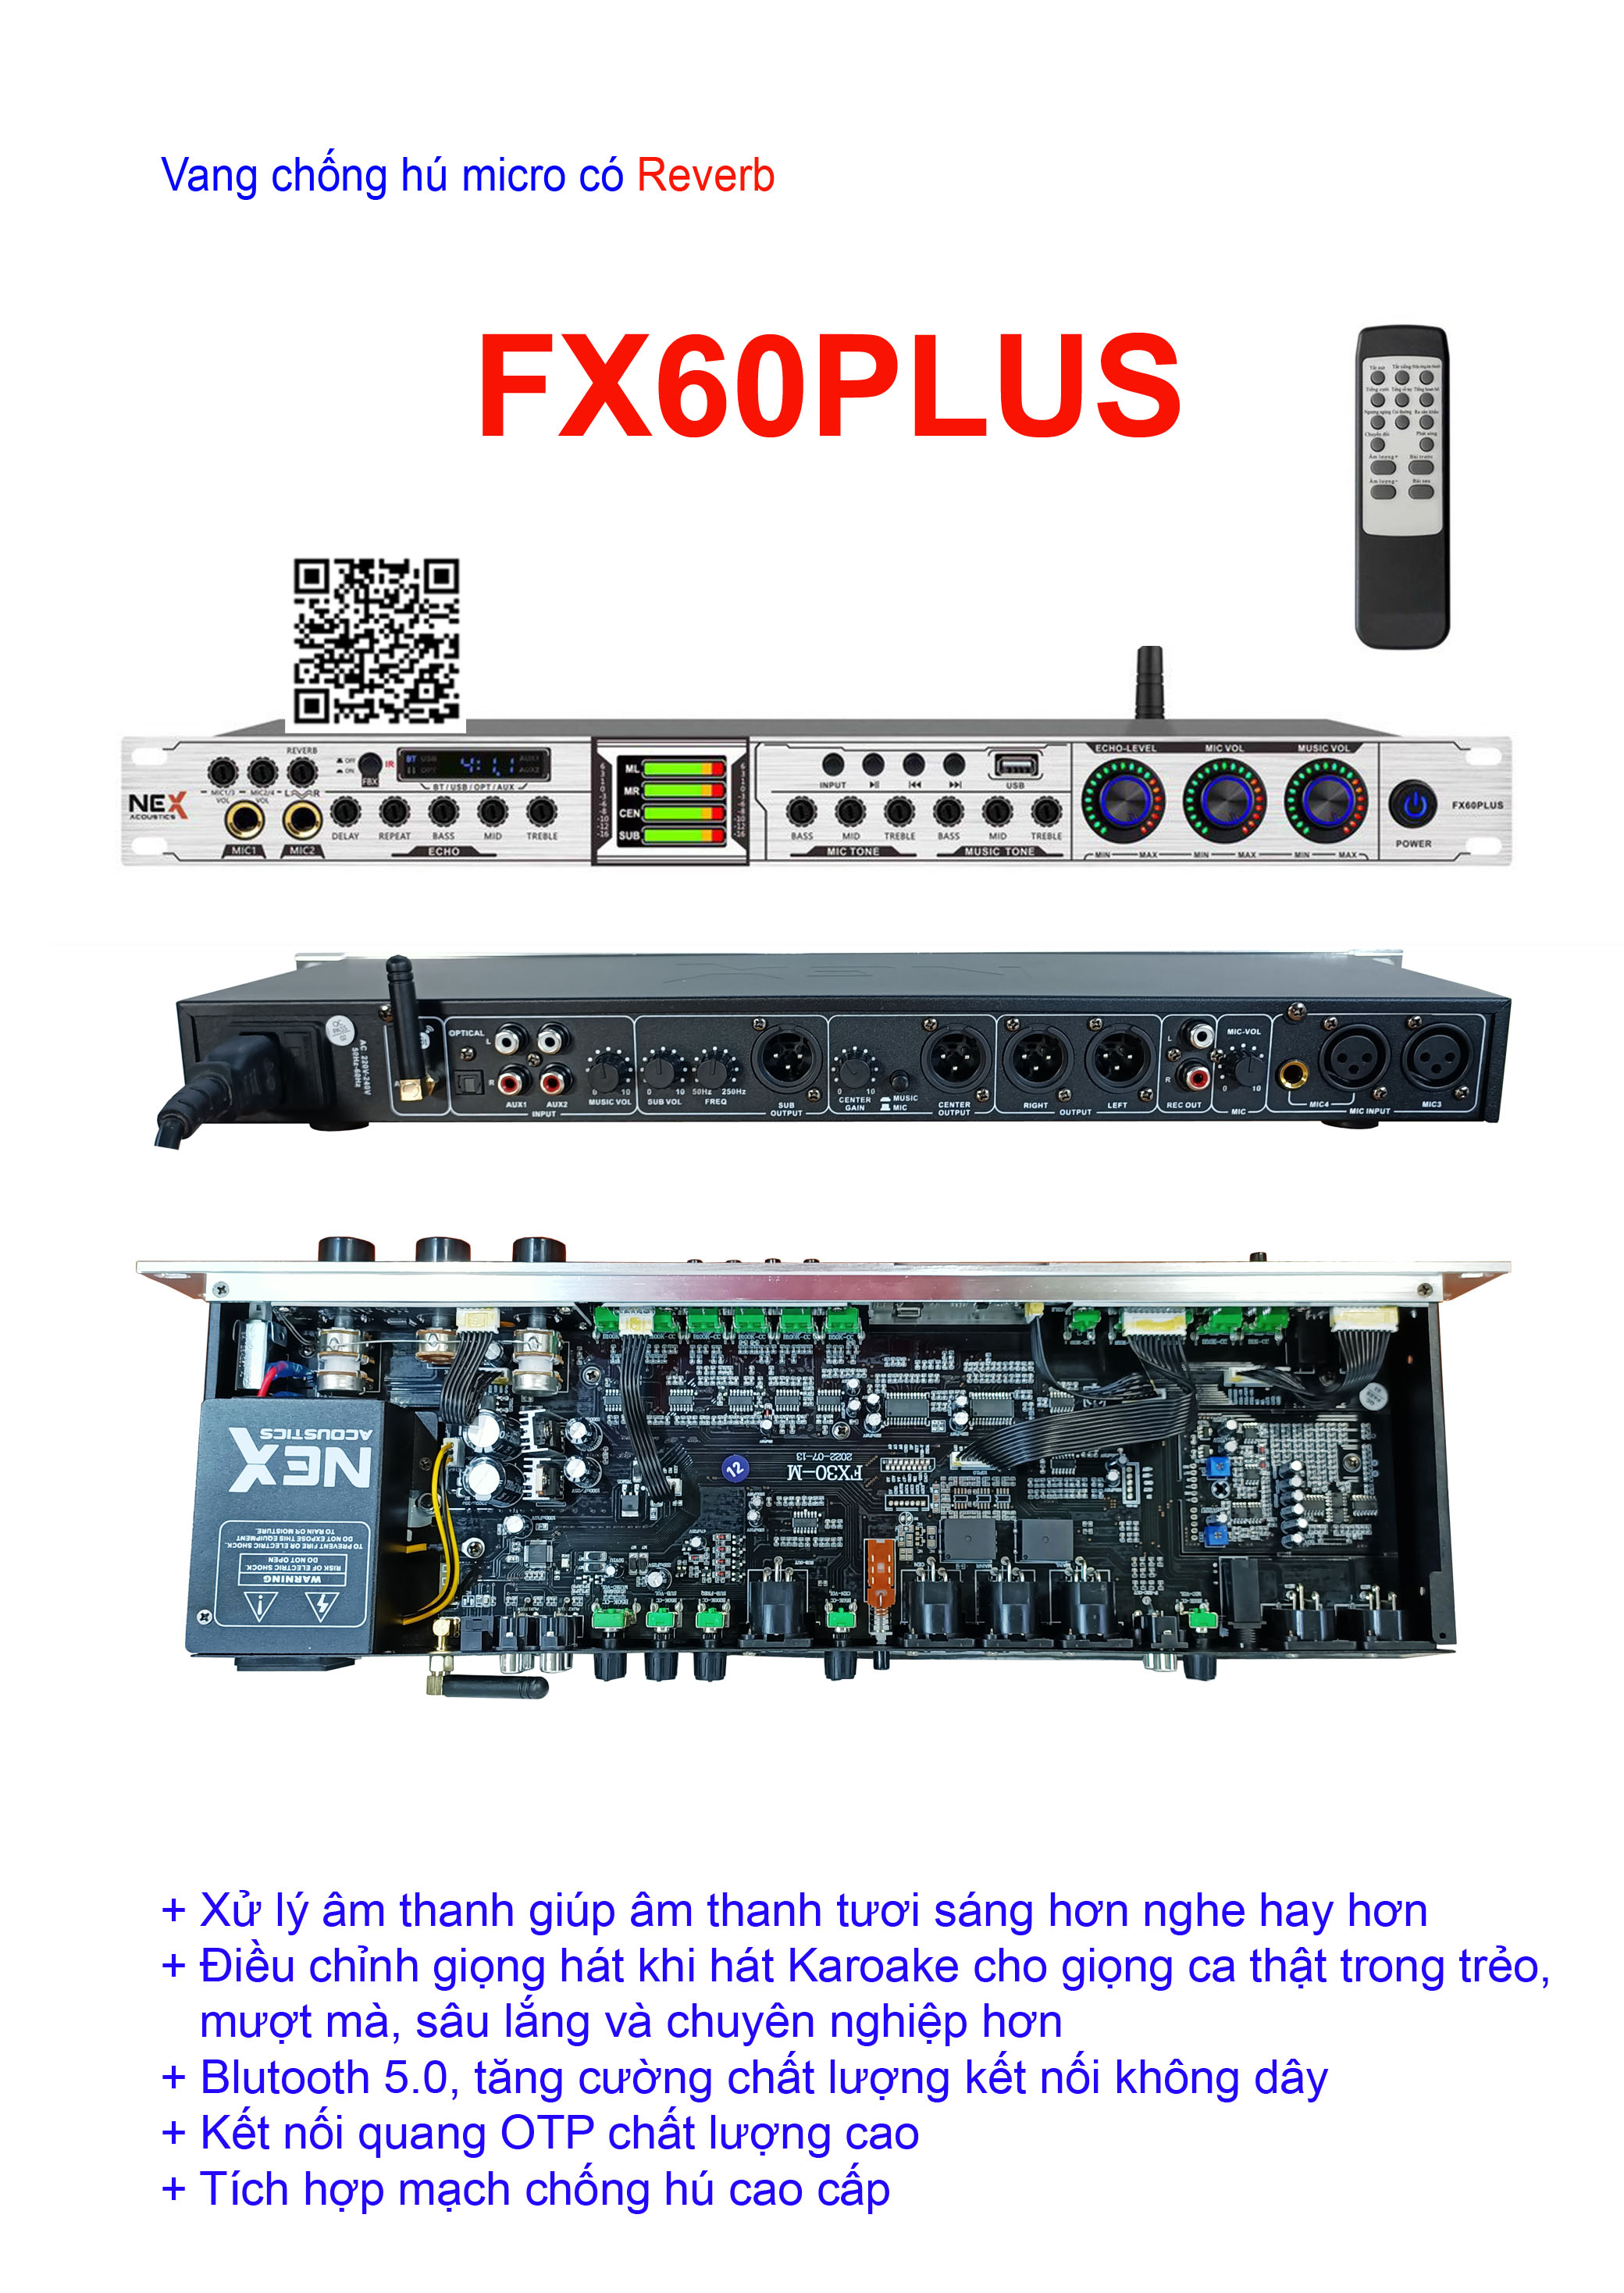 Vang cơ lai số chống hú micro Nex Fx60plus, vang số chỉnh cơ Nex Fx6plus, vang Karaoke chống hú,  có Điều khiển + Cổng quang + Bluetooth, EV-2000